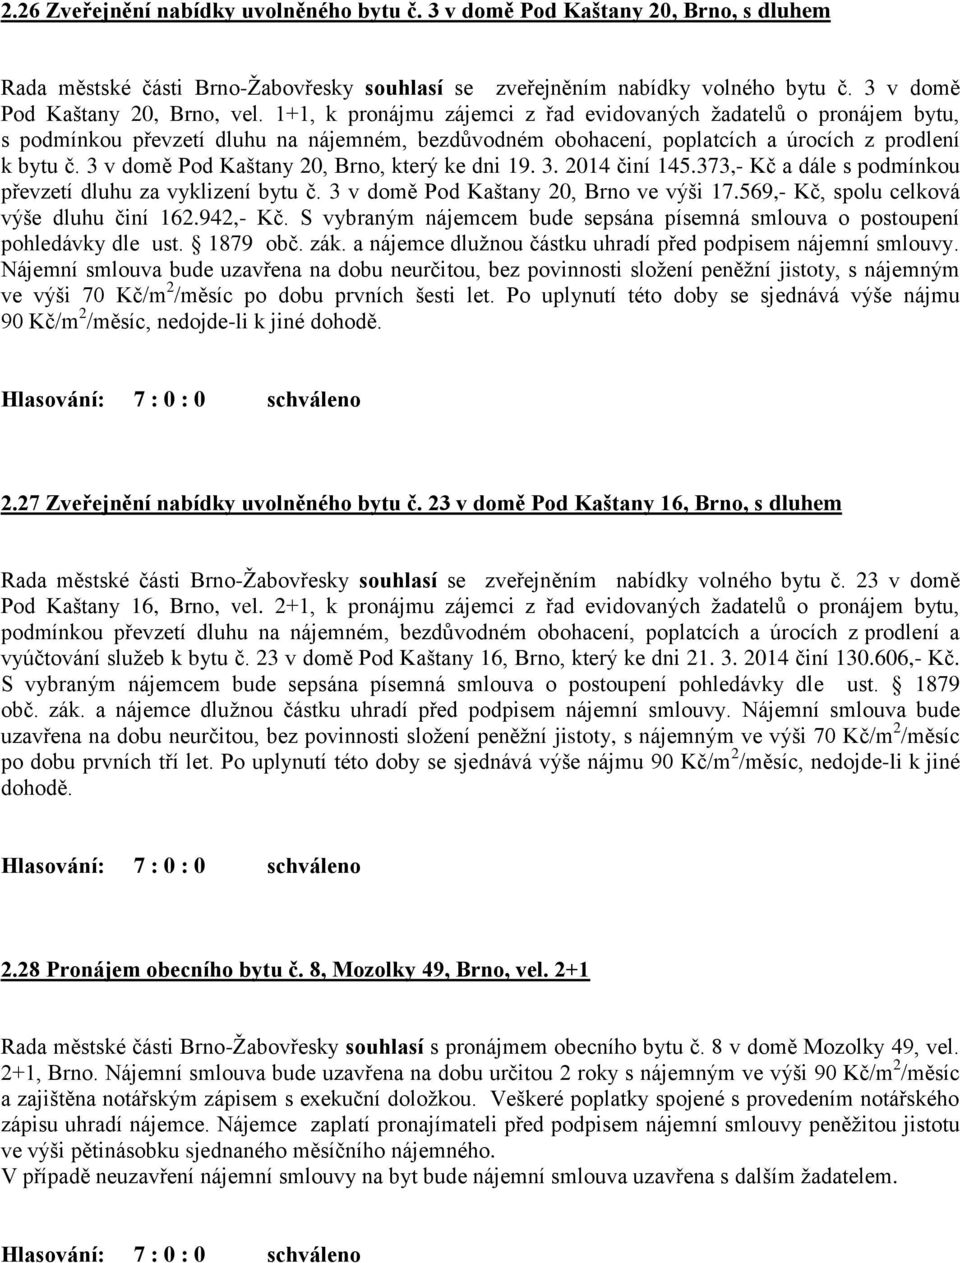 3 v domě Pod Kaštany 20, Brno, který ke dni 19. 3. 2014 činí 145.373,- Kč a dále s podmínkou převzetí dluhu za vyklizení bytu č. 3 v domě Pod Kaštany 20, Brno ve výši 17.